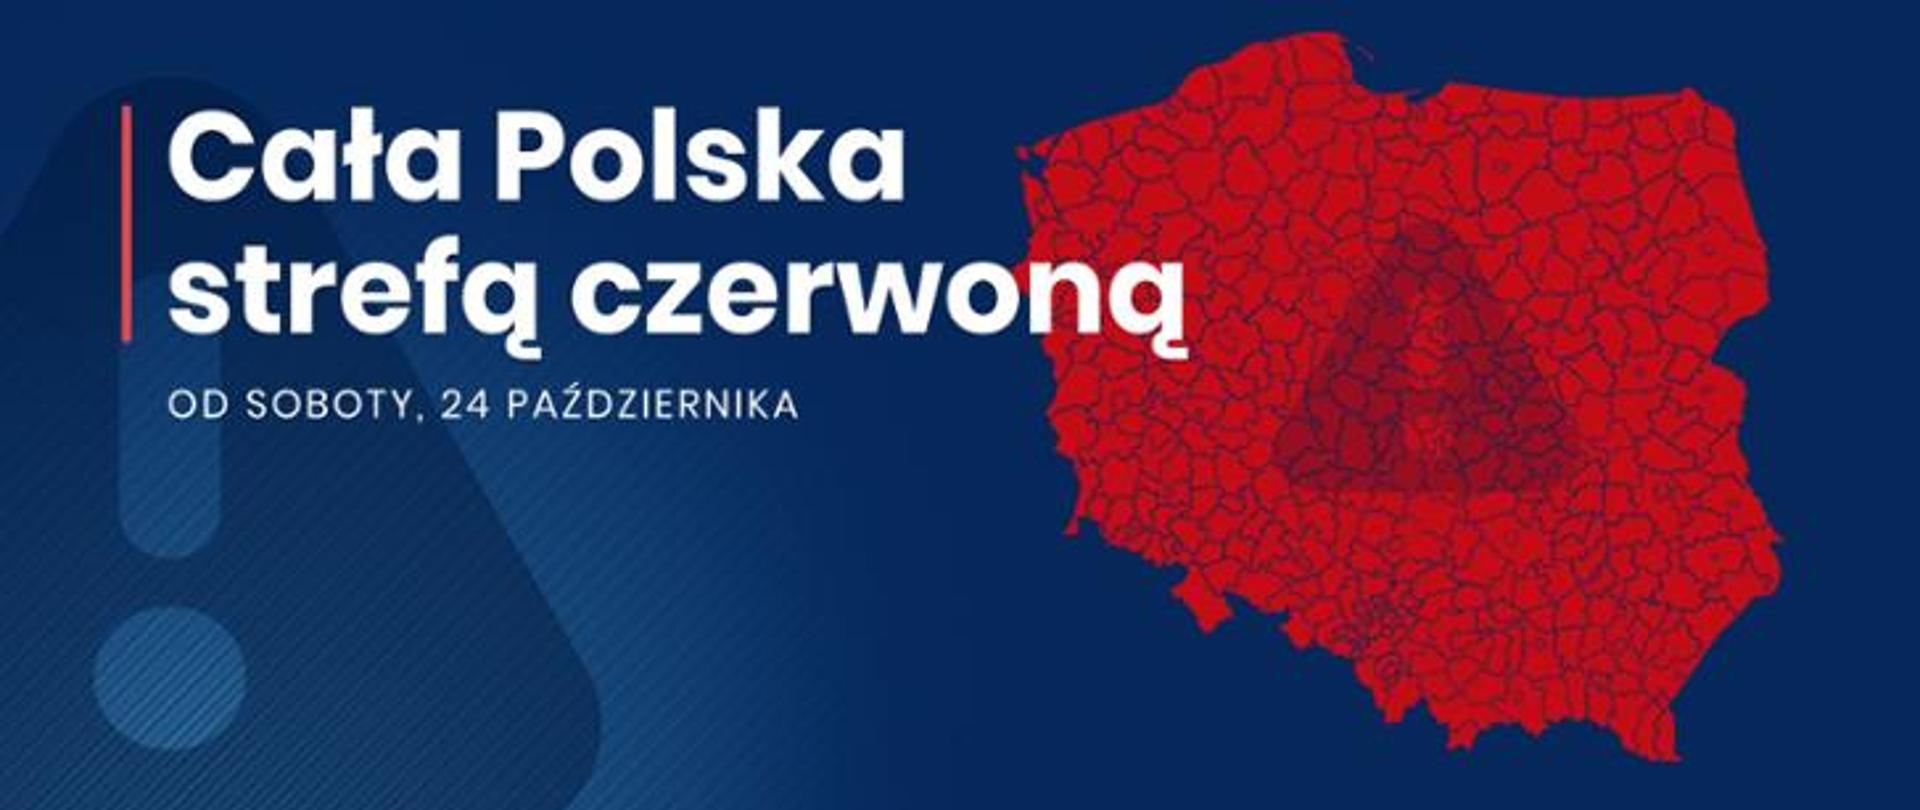 Grafika przedstawia mapę Polski w kolorze czerwonym, osadzoną na niebieskim tle. Po lewej stronie znajduje się napis "Cała Polska strefą czerwoną. Od soboty, 24 października"